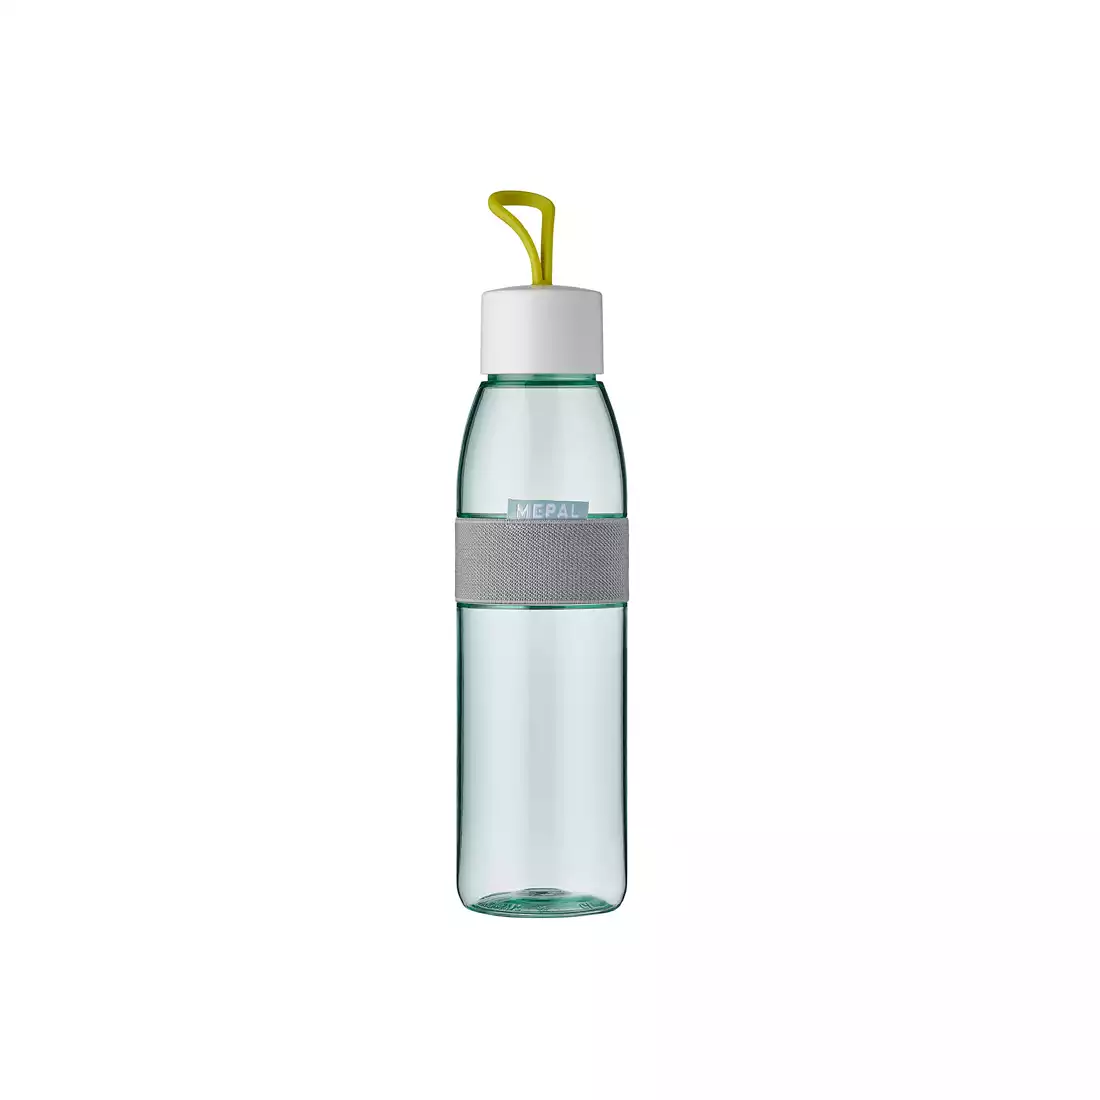 MEPAL WATER ELLIPSE sticla de apa 500ml, lemon vibe 